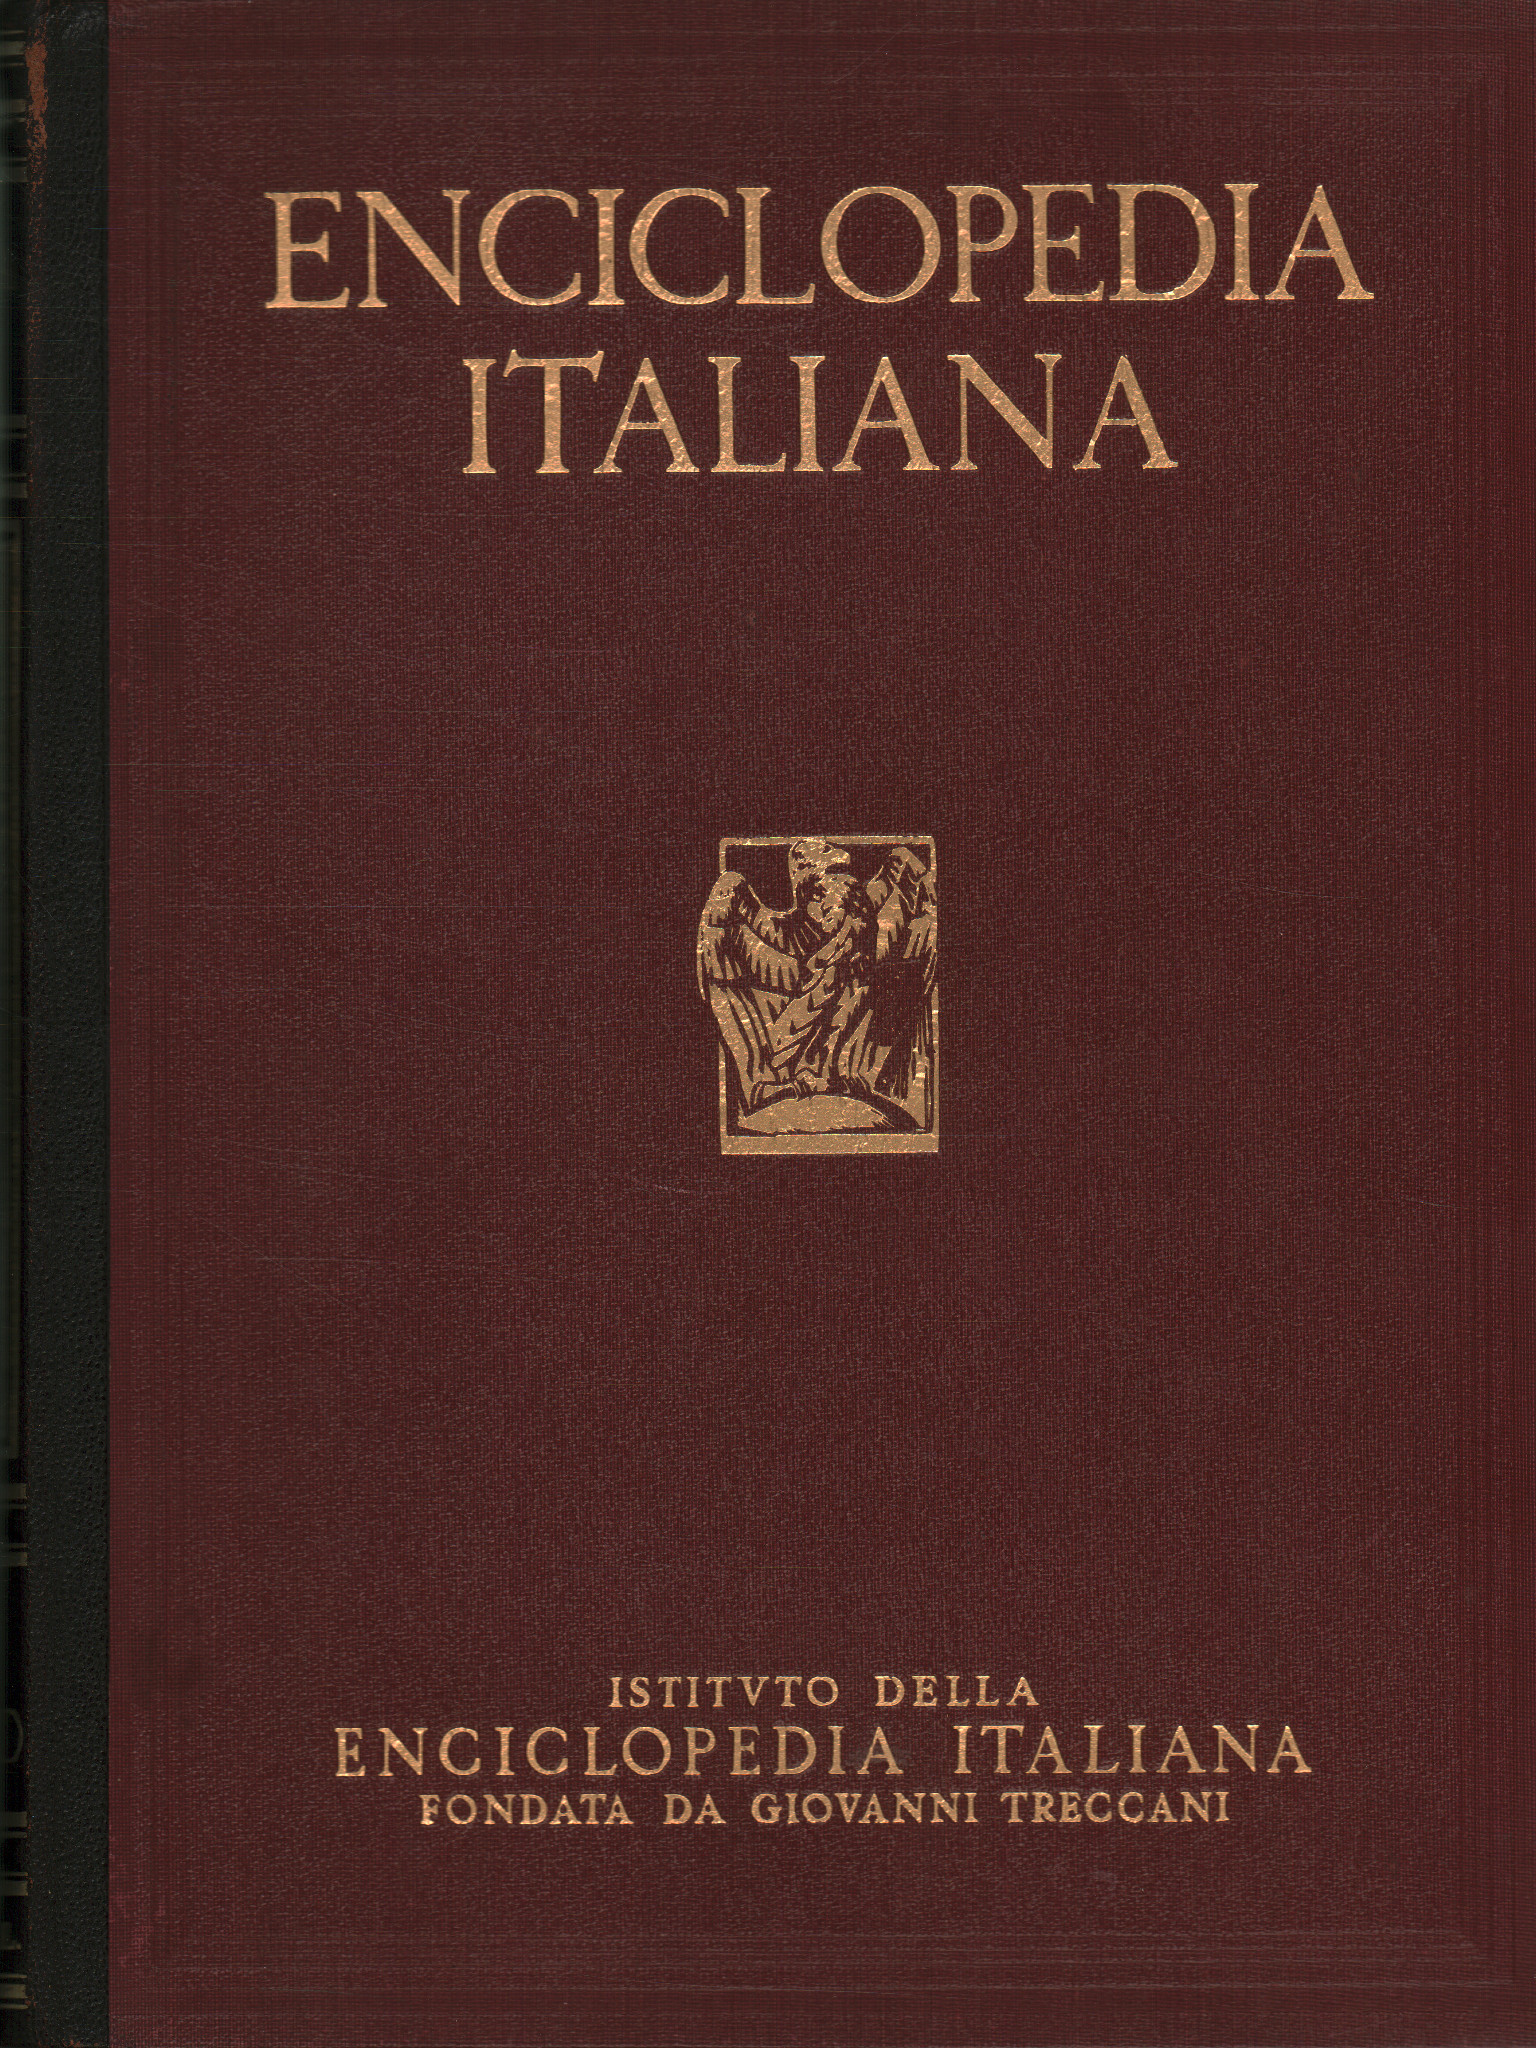 Italienische Enzyklopädie der Wissenschaften, Briefe und Künste, AA.VV.